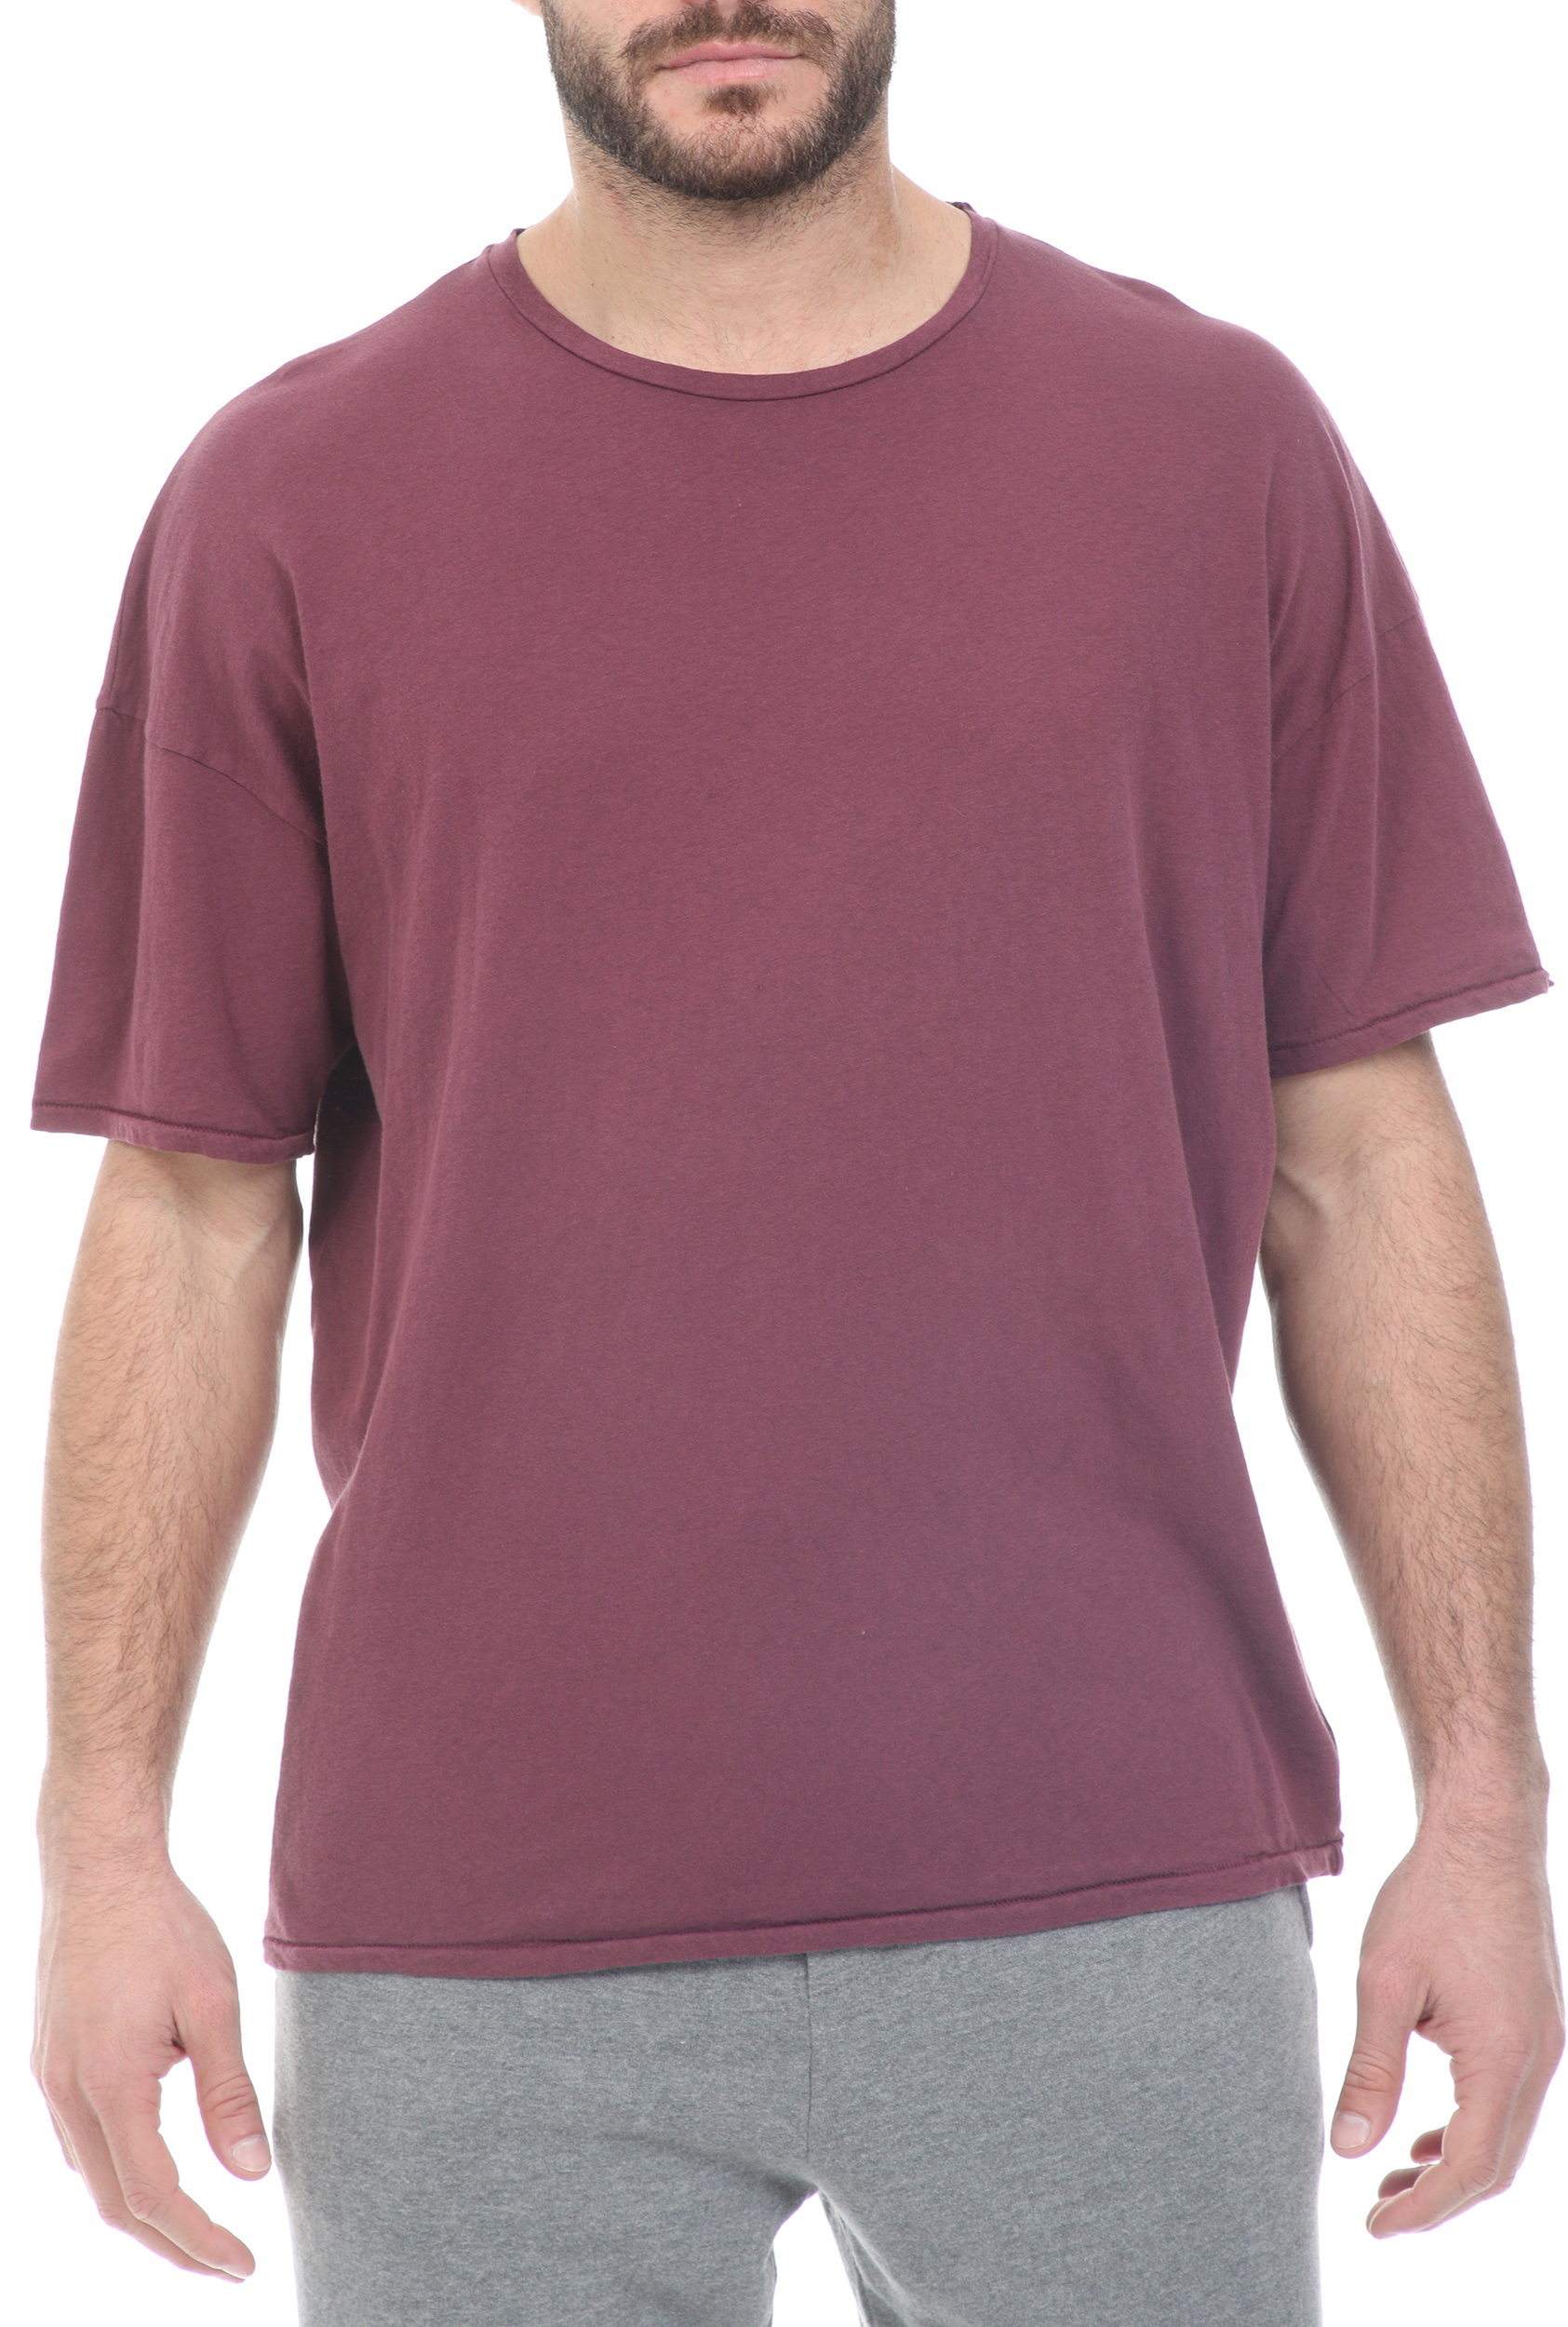 Ανδρικά/Ρούχα/Μπλούζες/Κοντομάνικες AMERICAN VINTAGE - Ανδρικό t-shirt AMERICAN VINTAGE καφέ